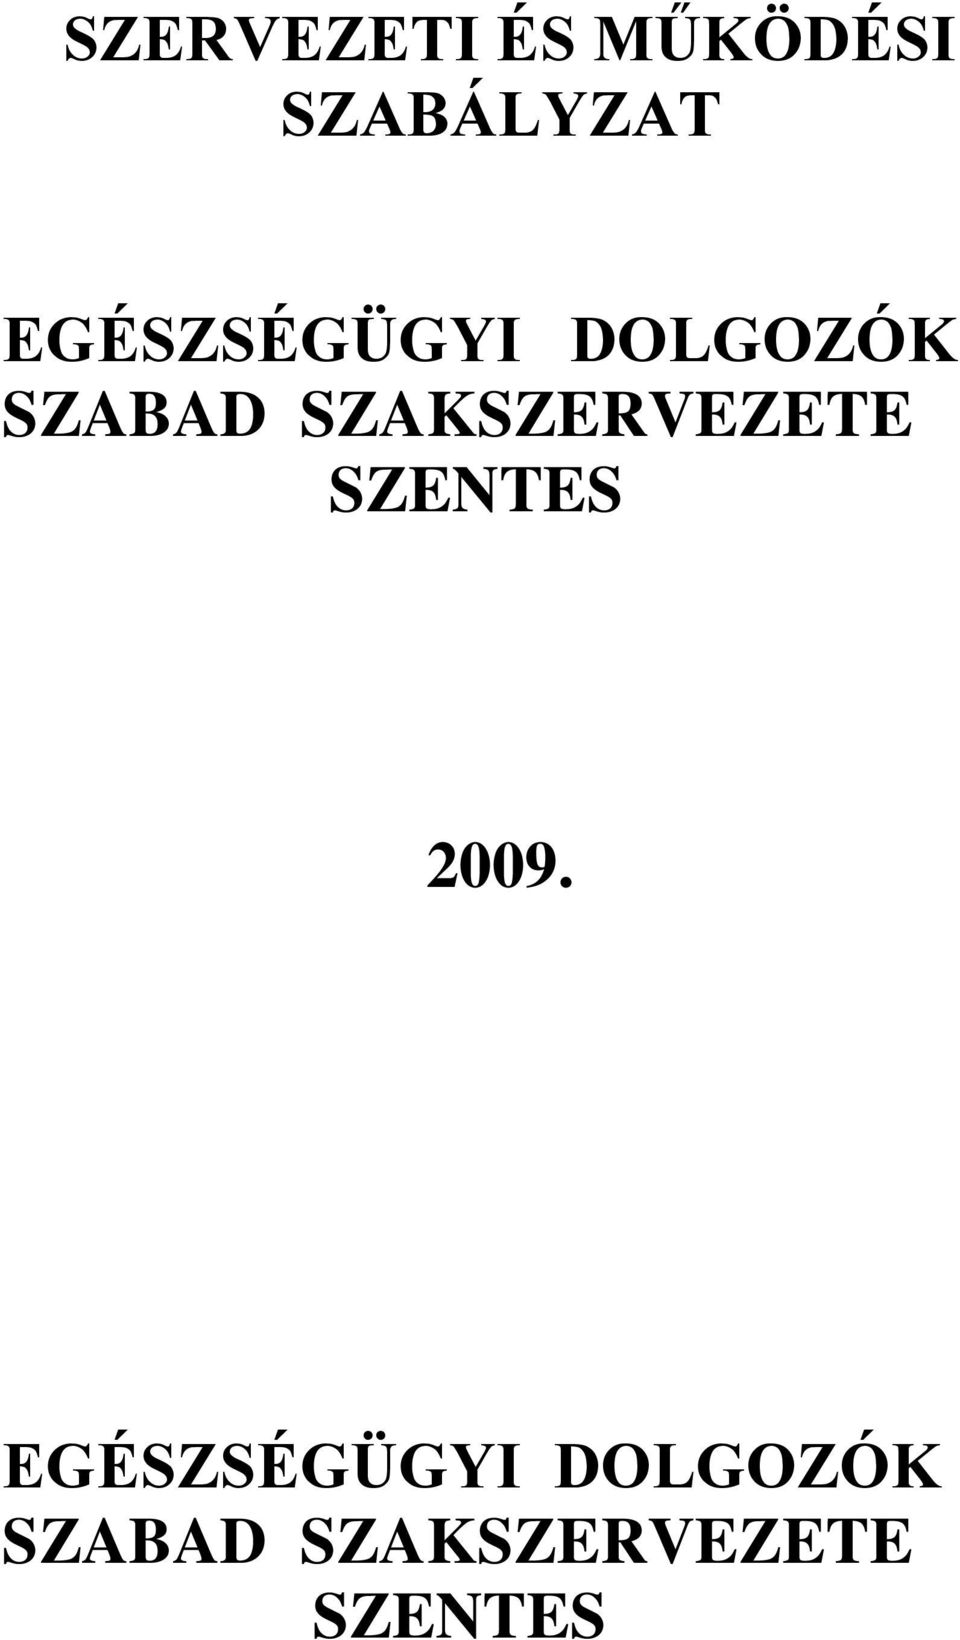 SZAKSZERVEZETE SZENTES 2009.